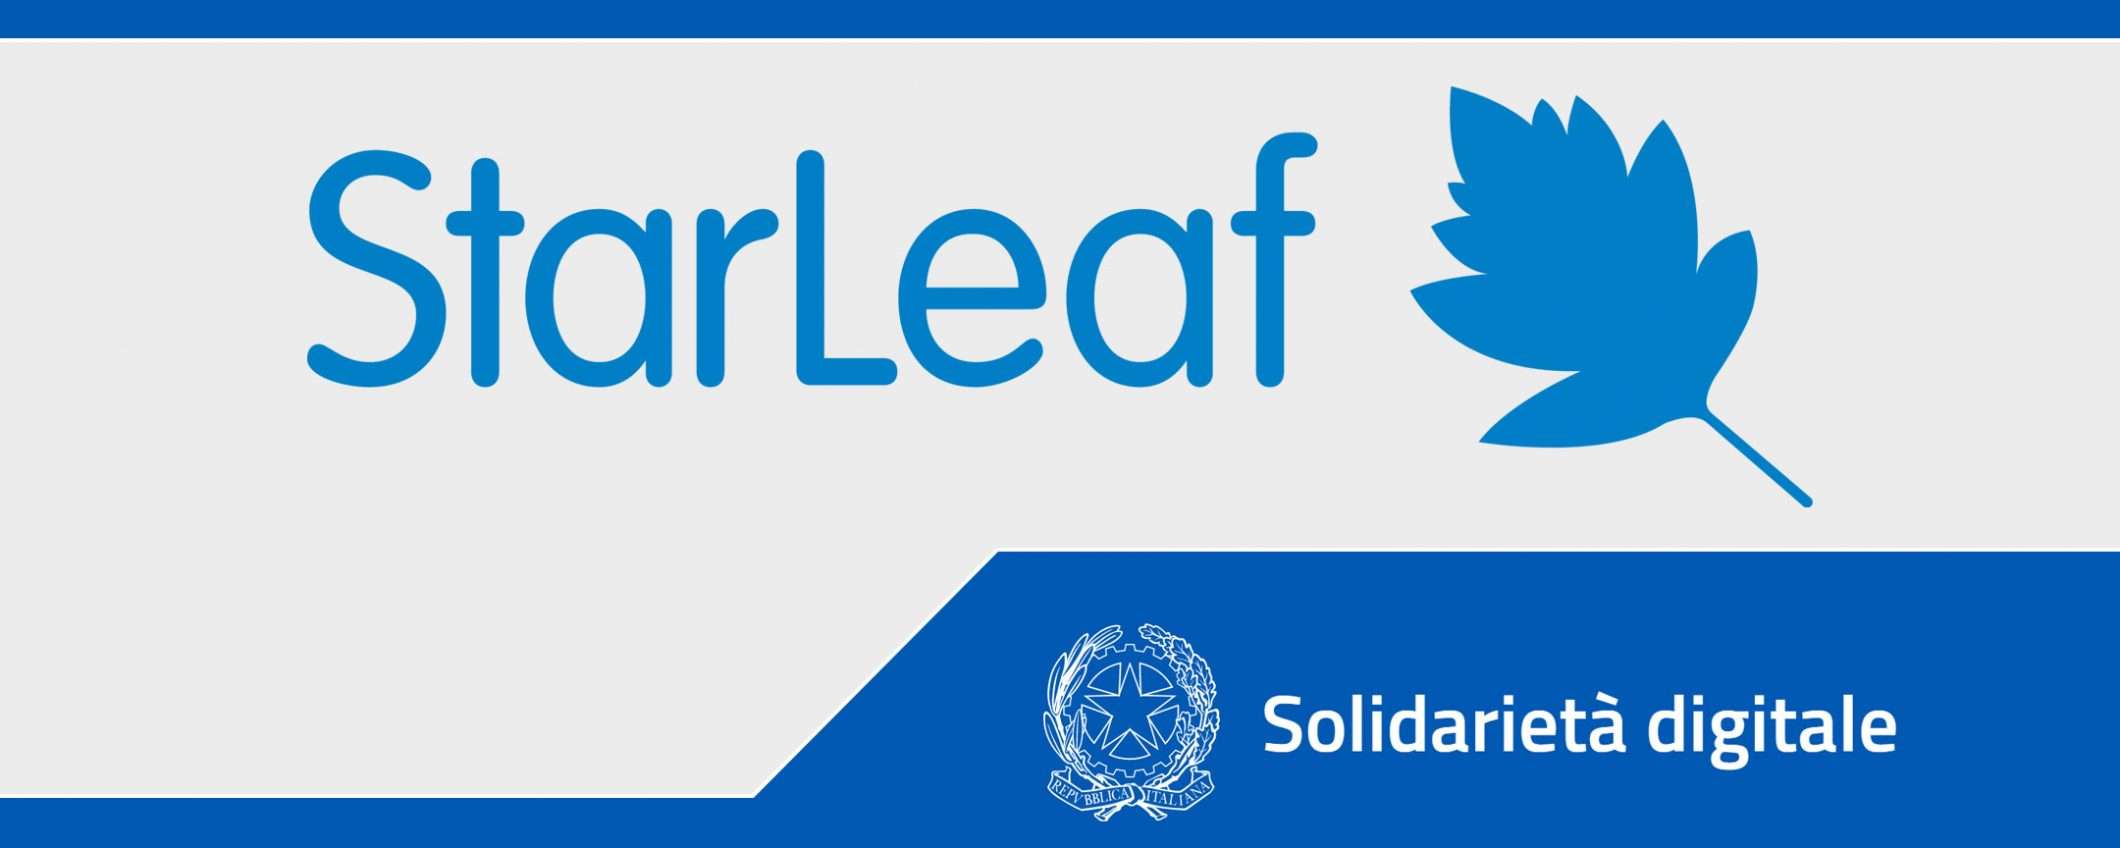 Solidarietà Digitale: videoconferenze con StarLeaf